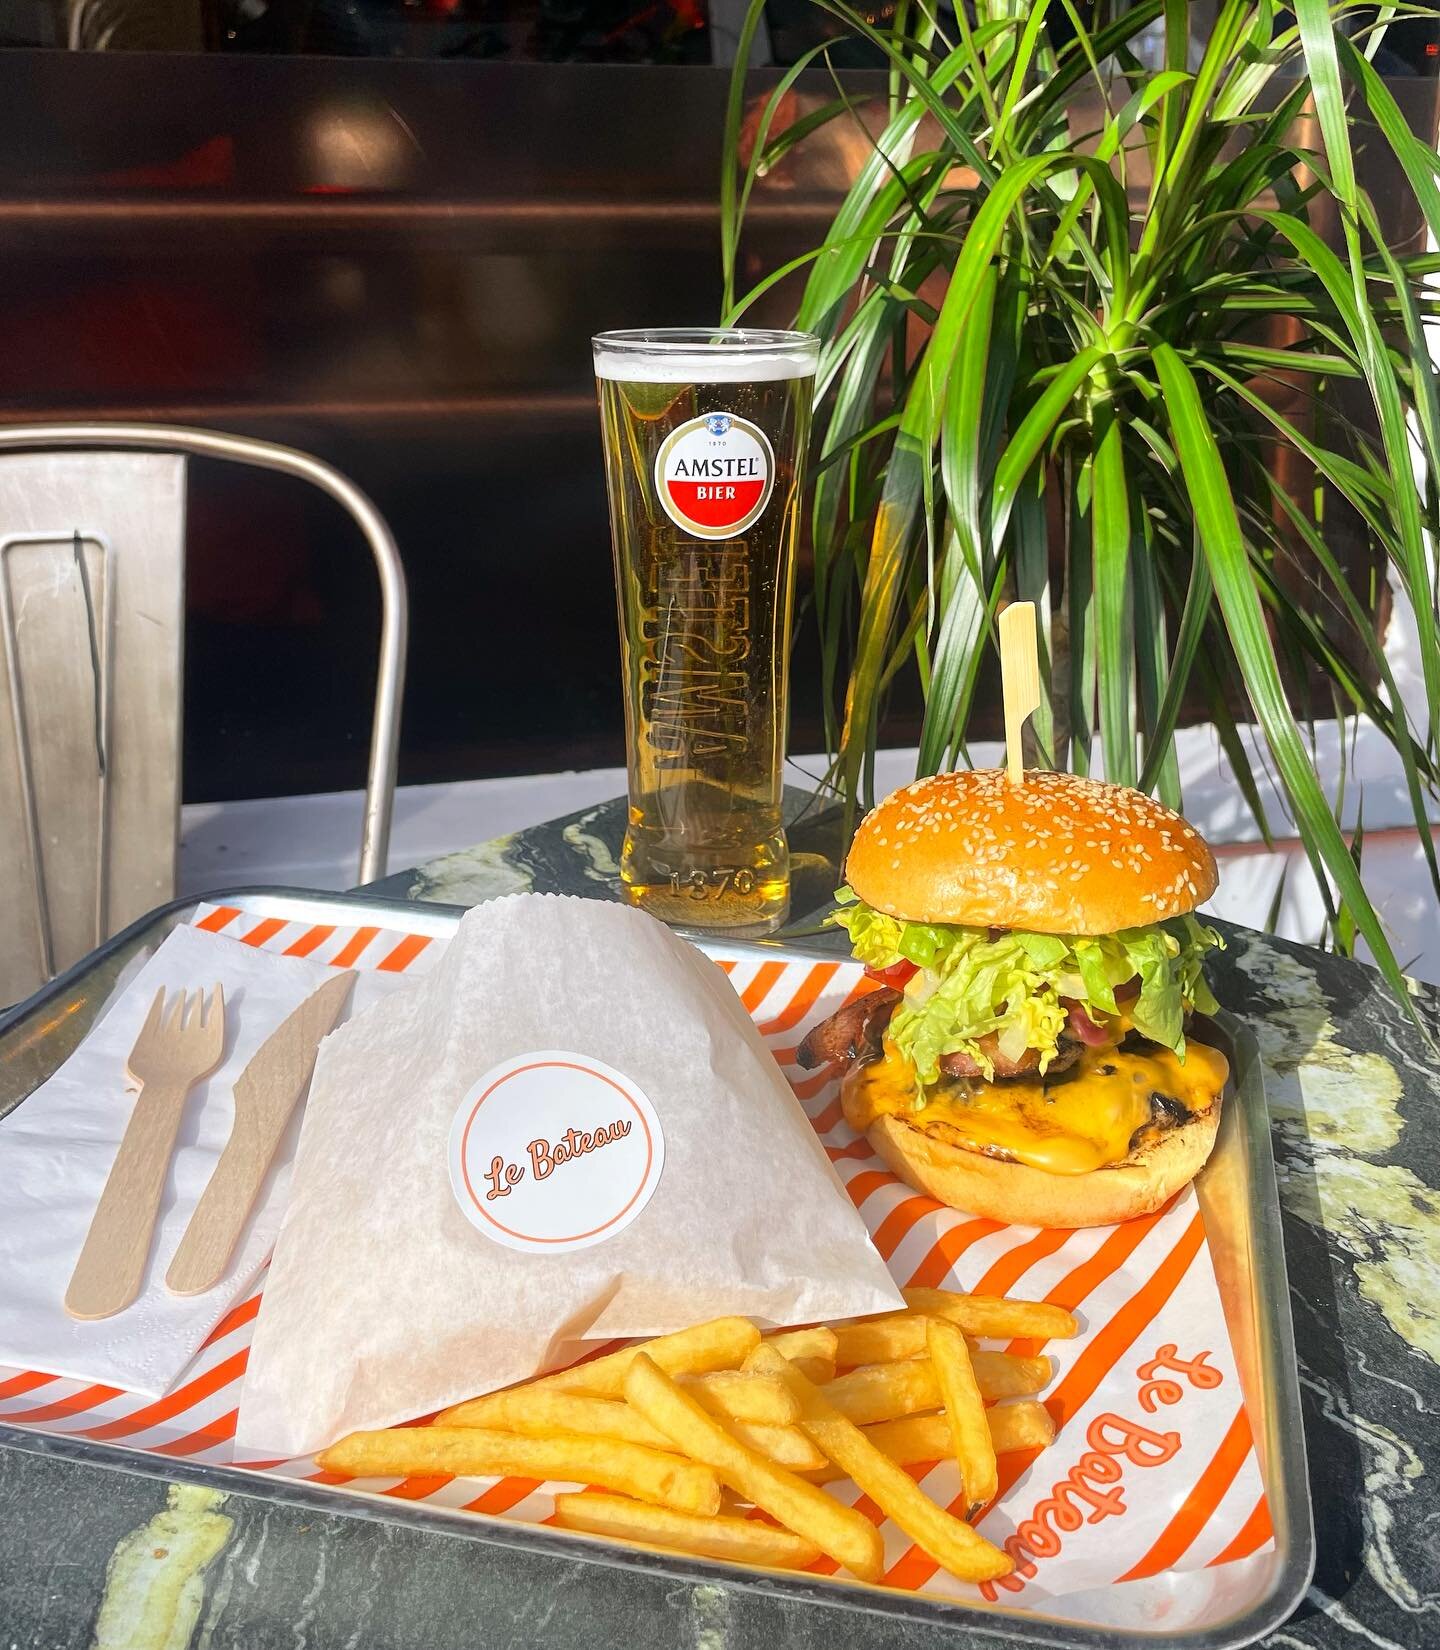 Savor our outrageously delicious burgers from Tuesday-Sunday. Nothing else comes close. 😋🍔 

#BurgerBliss #WeeklongIndulgence #BurgerParadise #burgerporn #lebateau #lebateauashleyx #lebateauashleycross